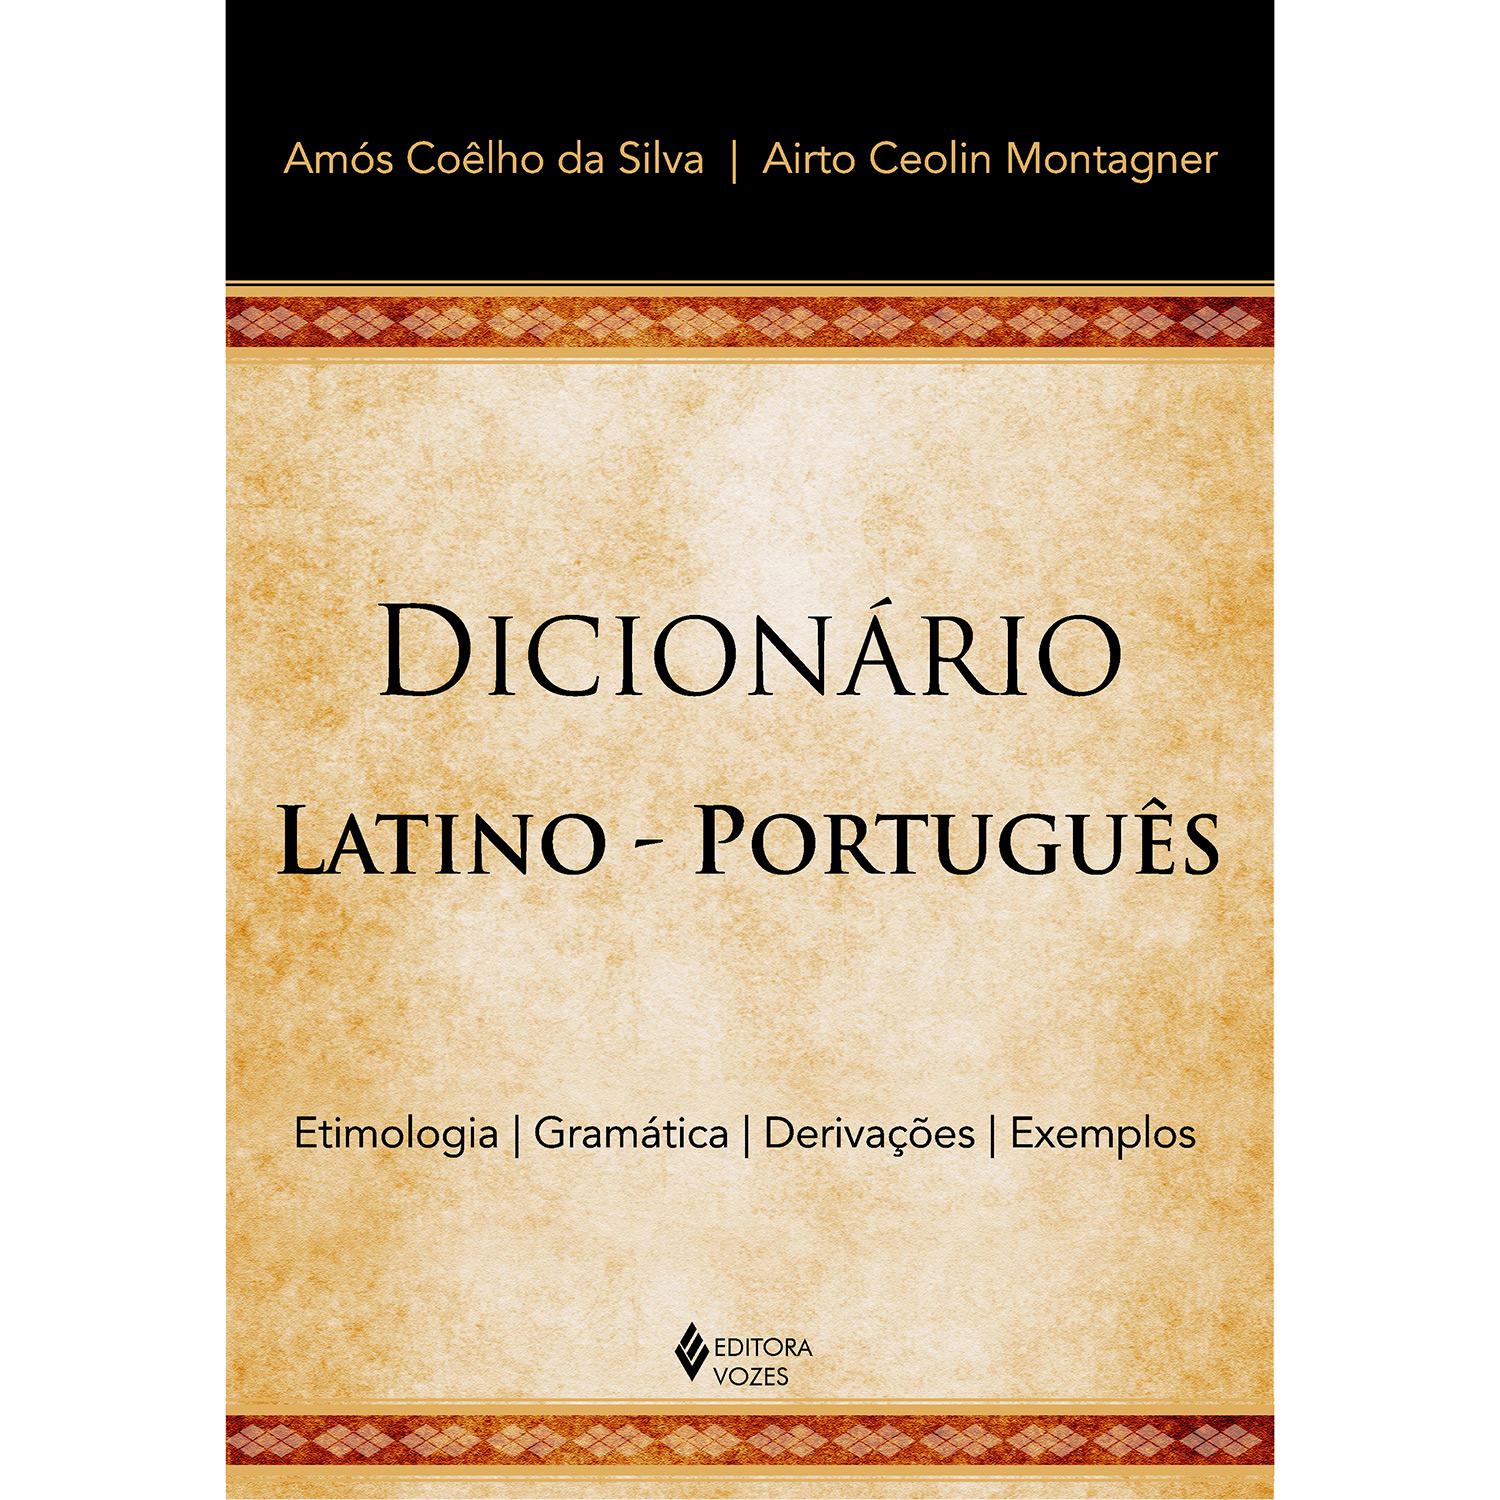 Livro - Dicionário Latino-Português é bom? Vale a pena?